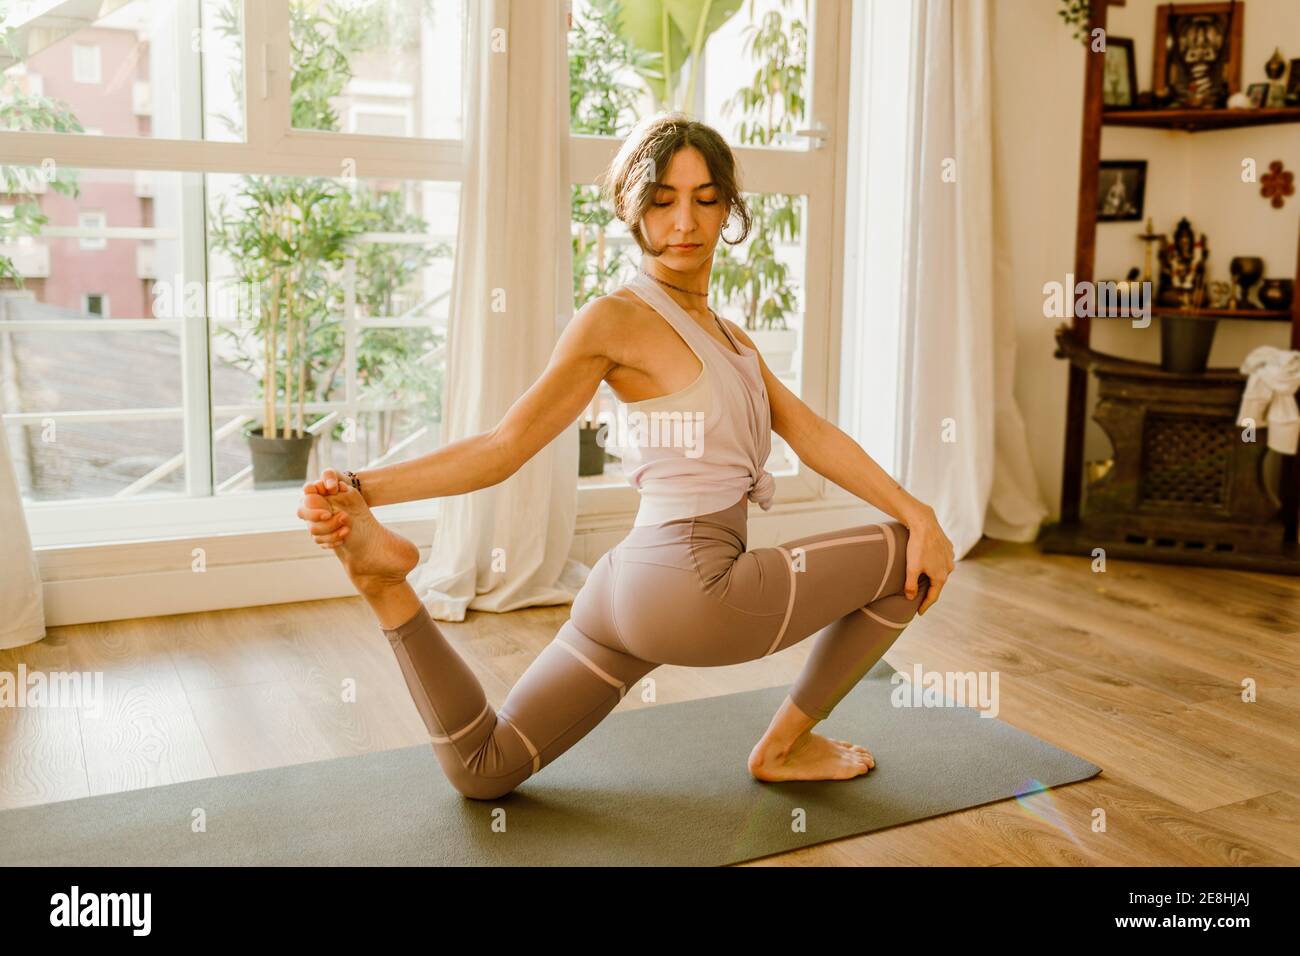 Seitenansicht der jungen flexiblen Frau in Sportkleidung stehend auf Knie und Fuß berühren, während Yoga im Haus praktiziert wird Stockfoto